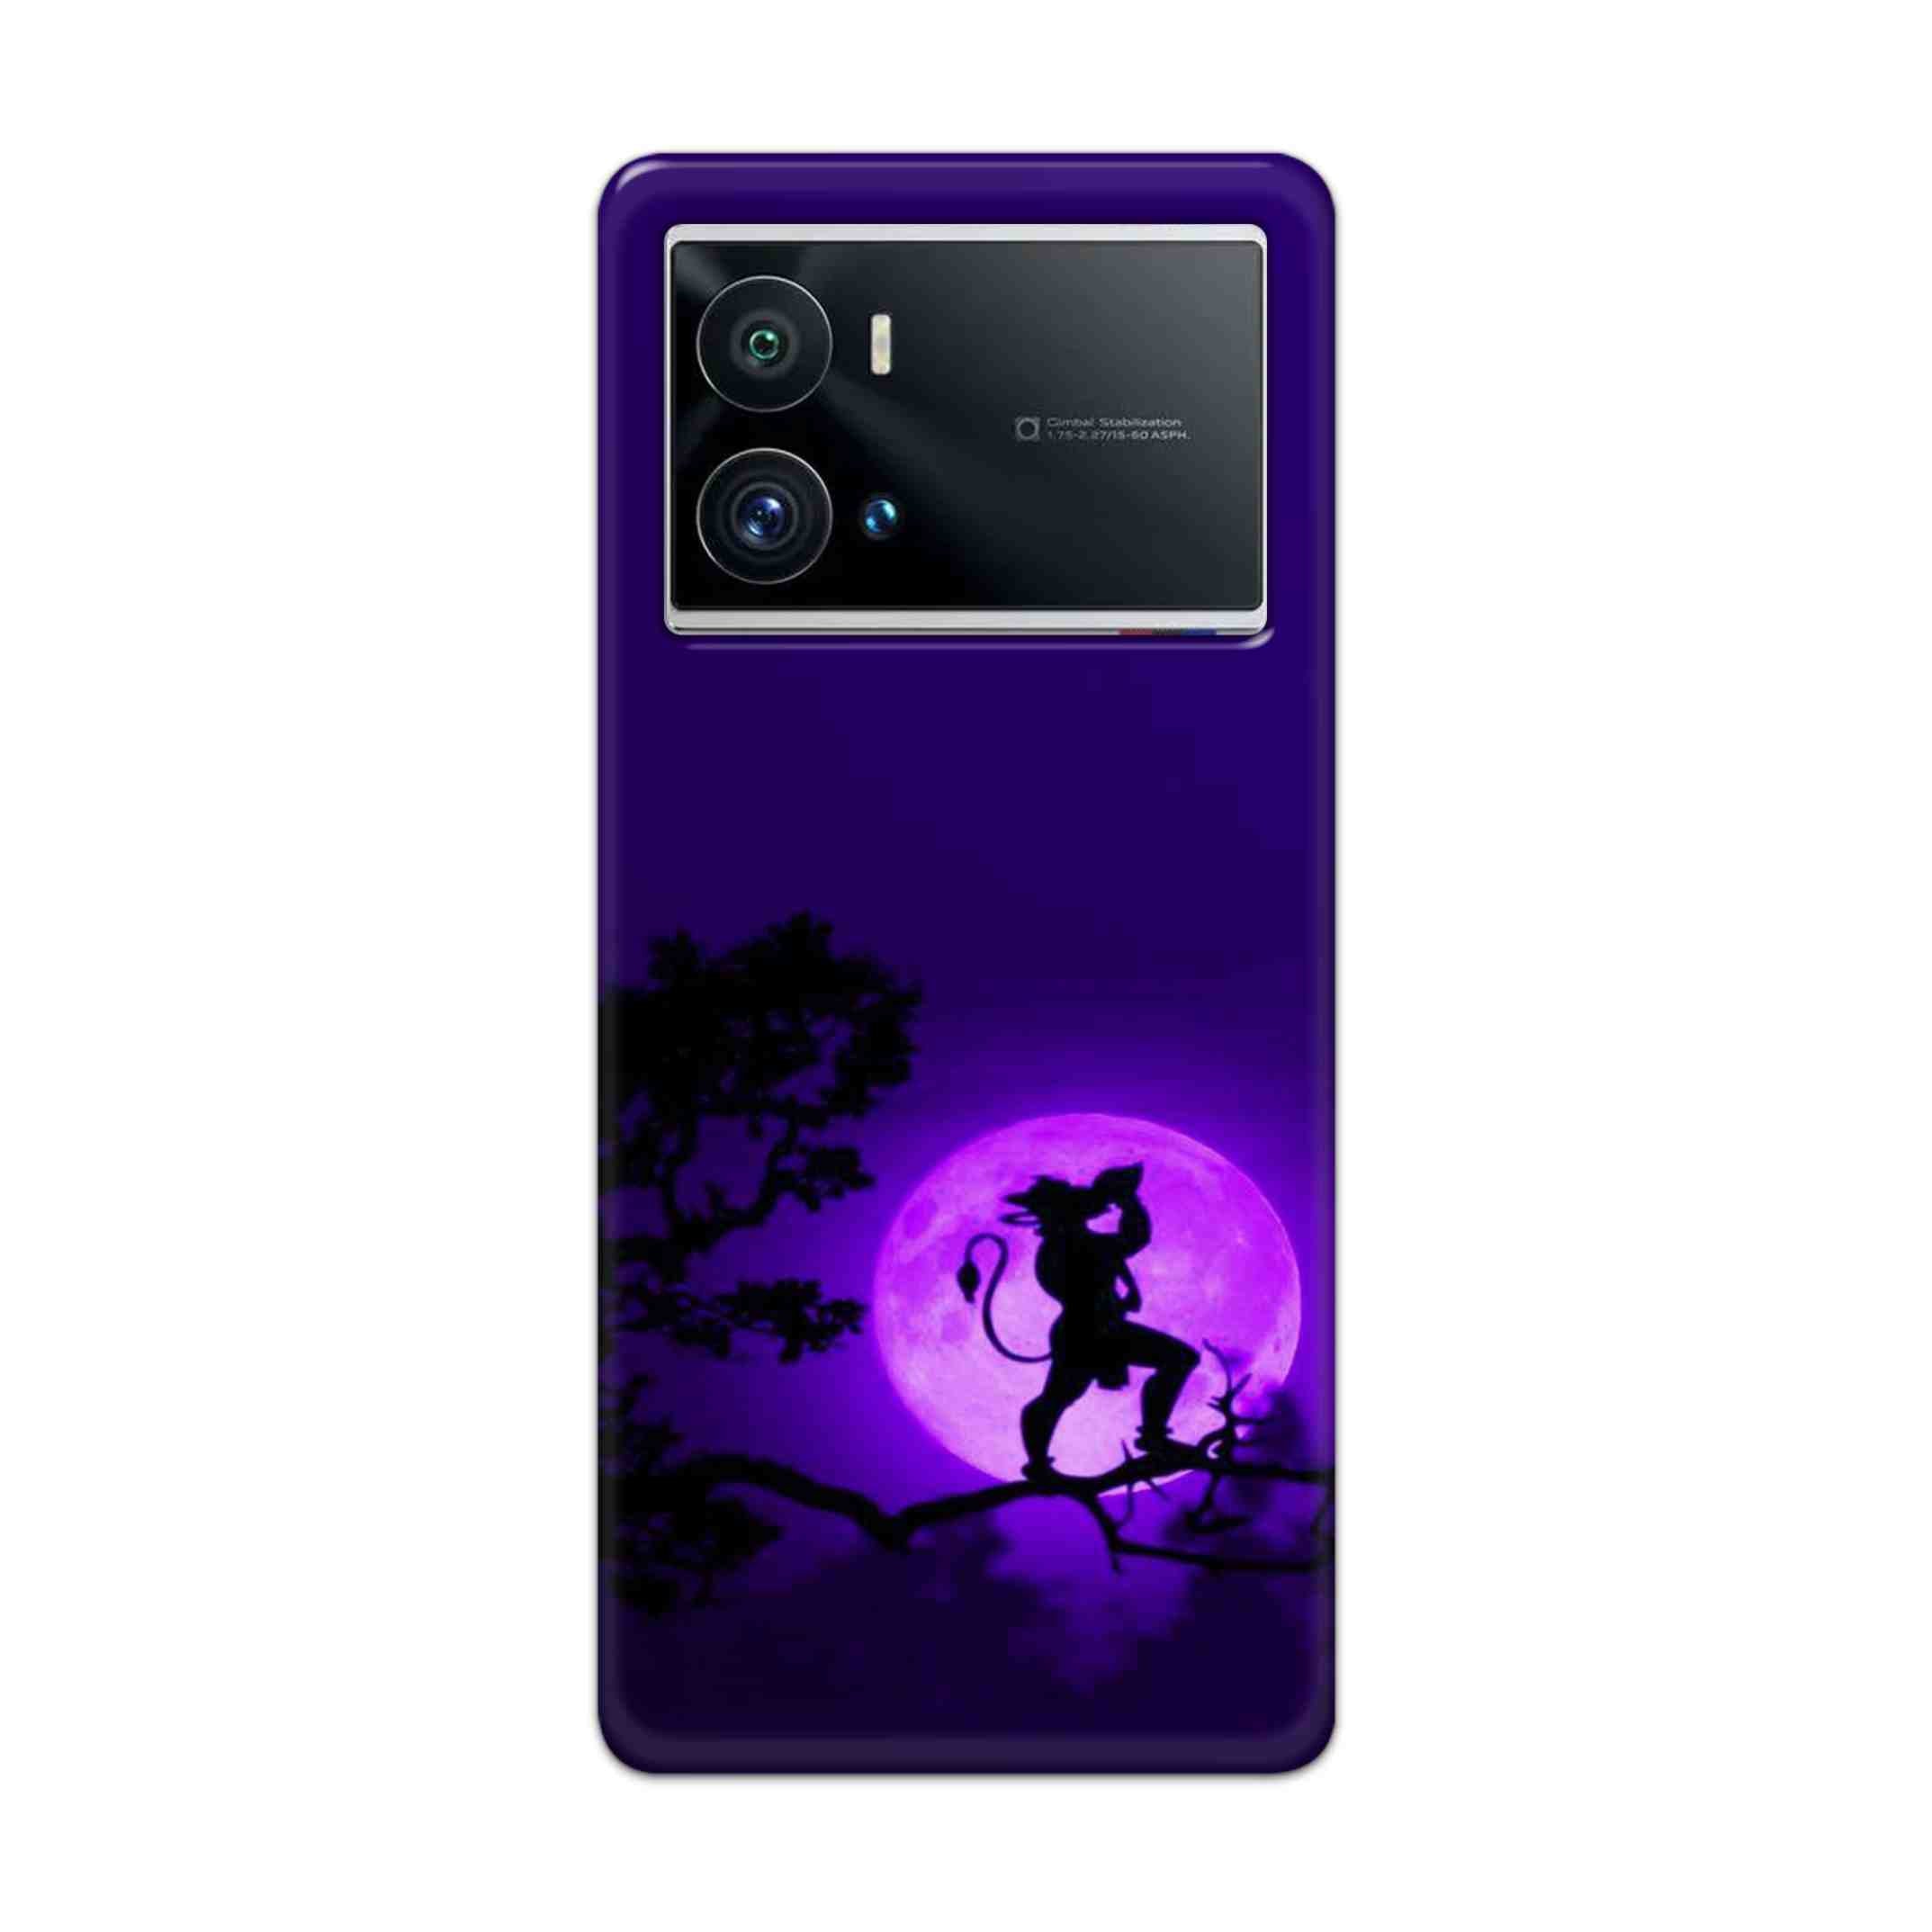 Buy Hanuman Hard Back Mobile Phone Case Cover For iQOO 9 Pro 5G Online